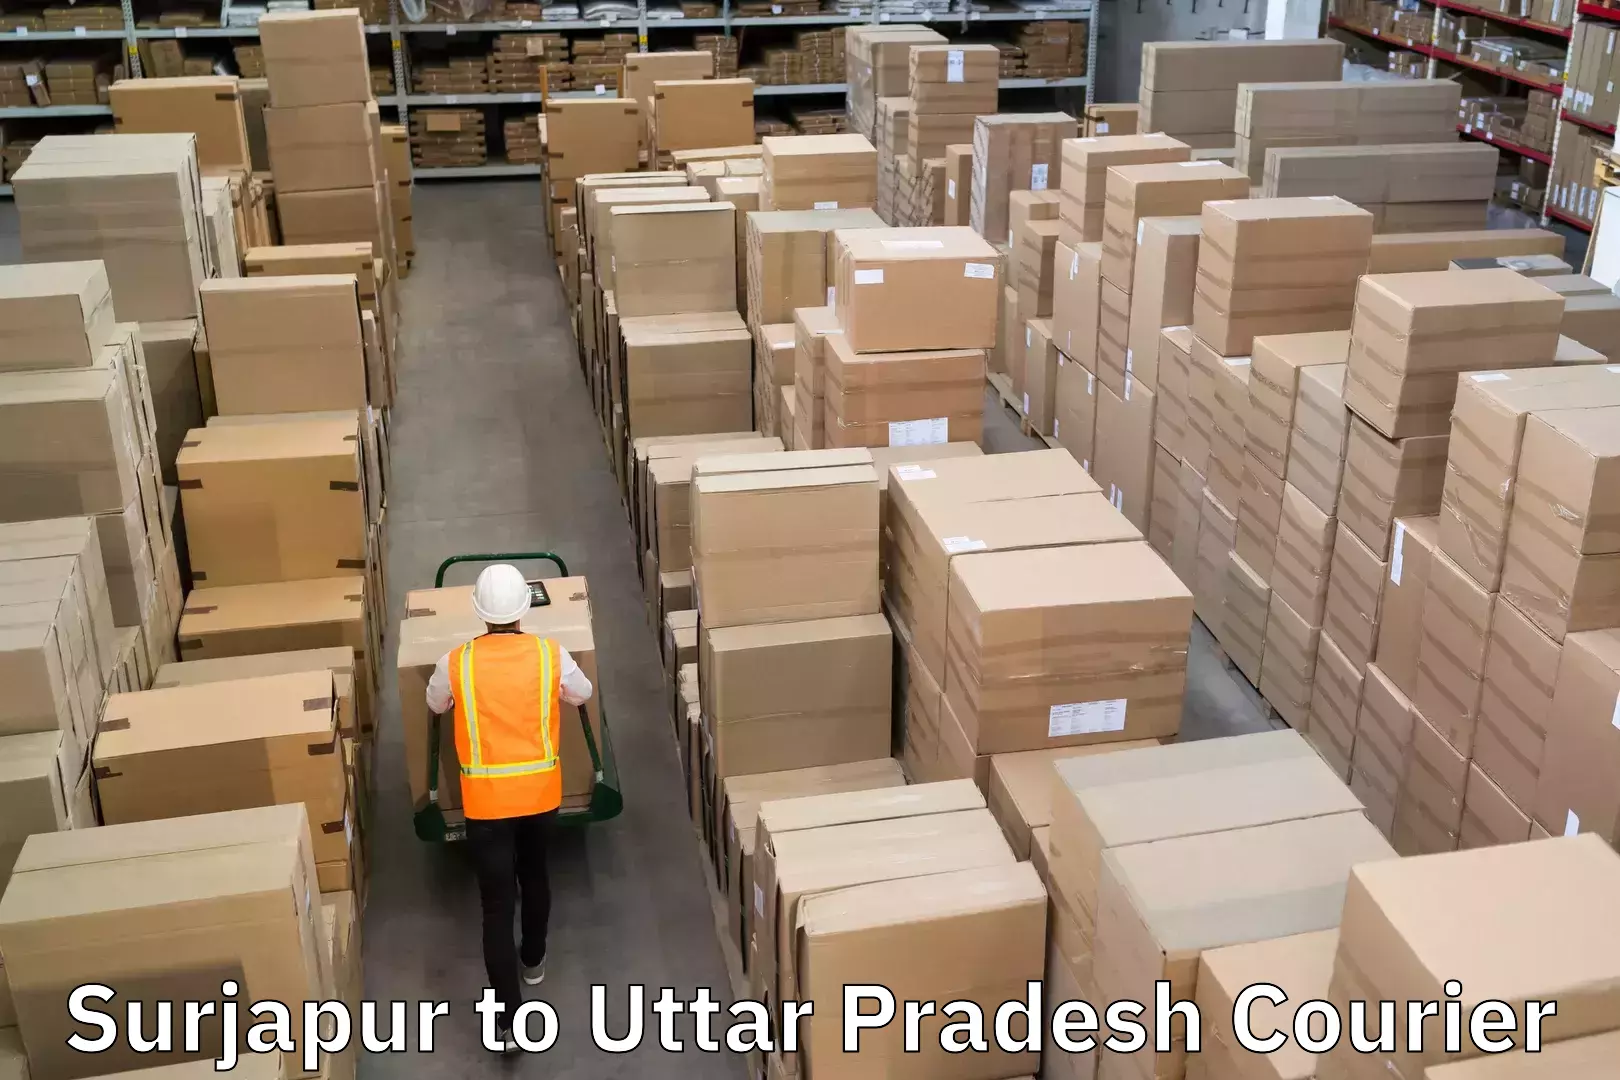 International courier networks Surjapur to Uttar Pradesh